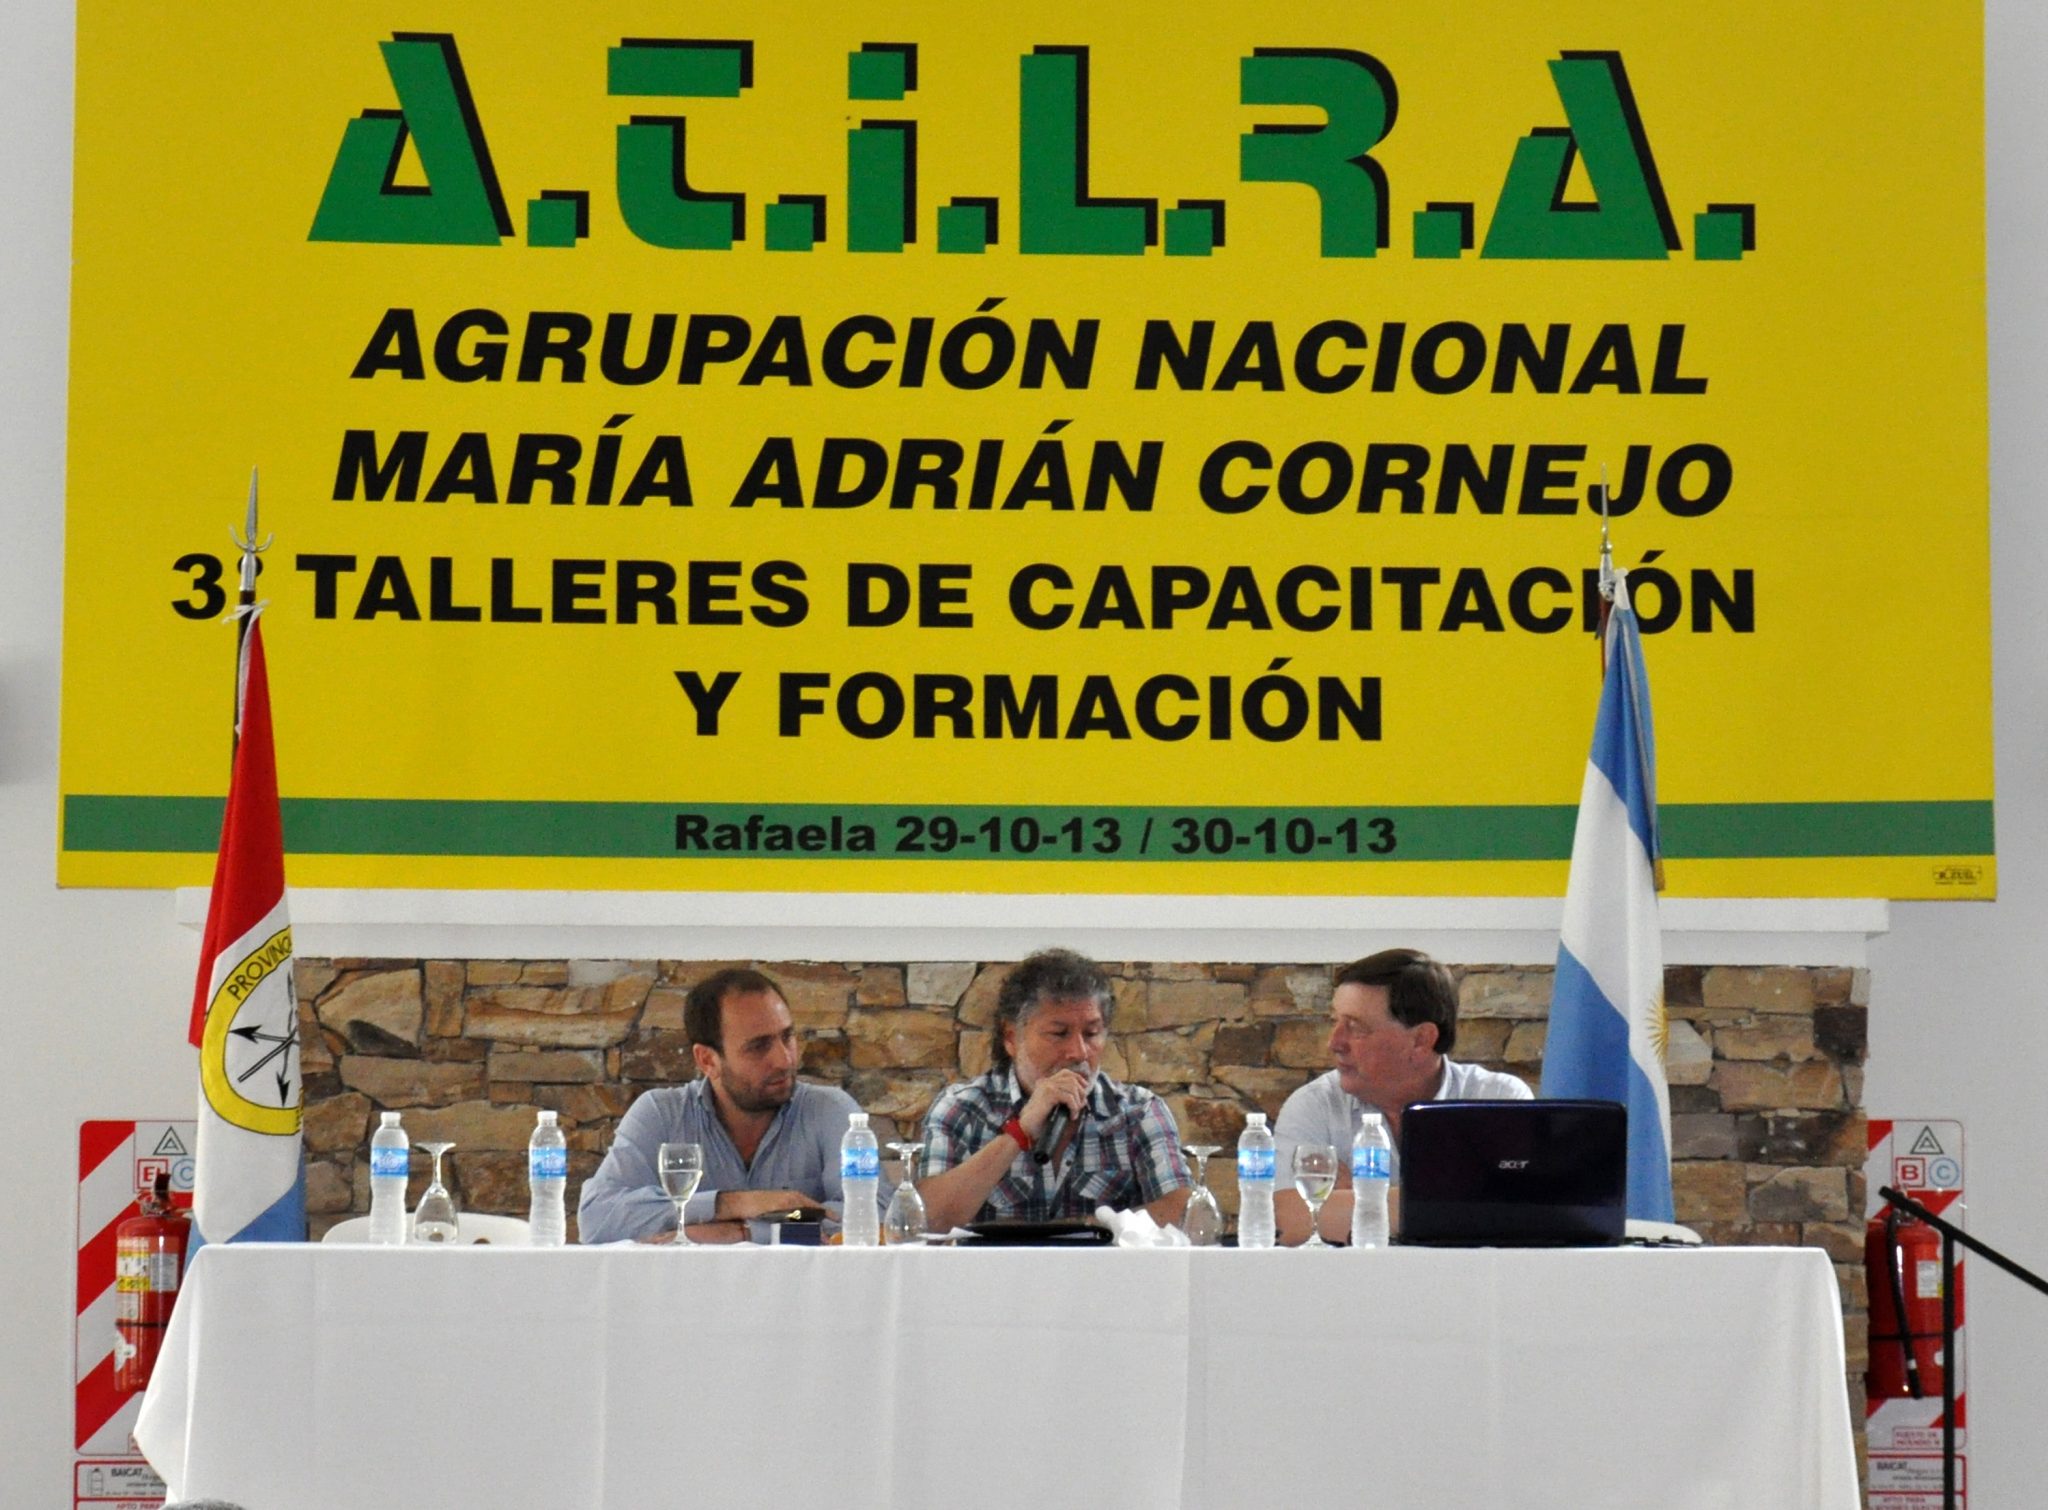 Videla participó del taller de capacitación organizado por ATILRA